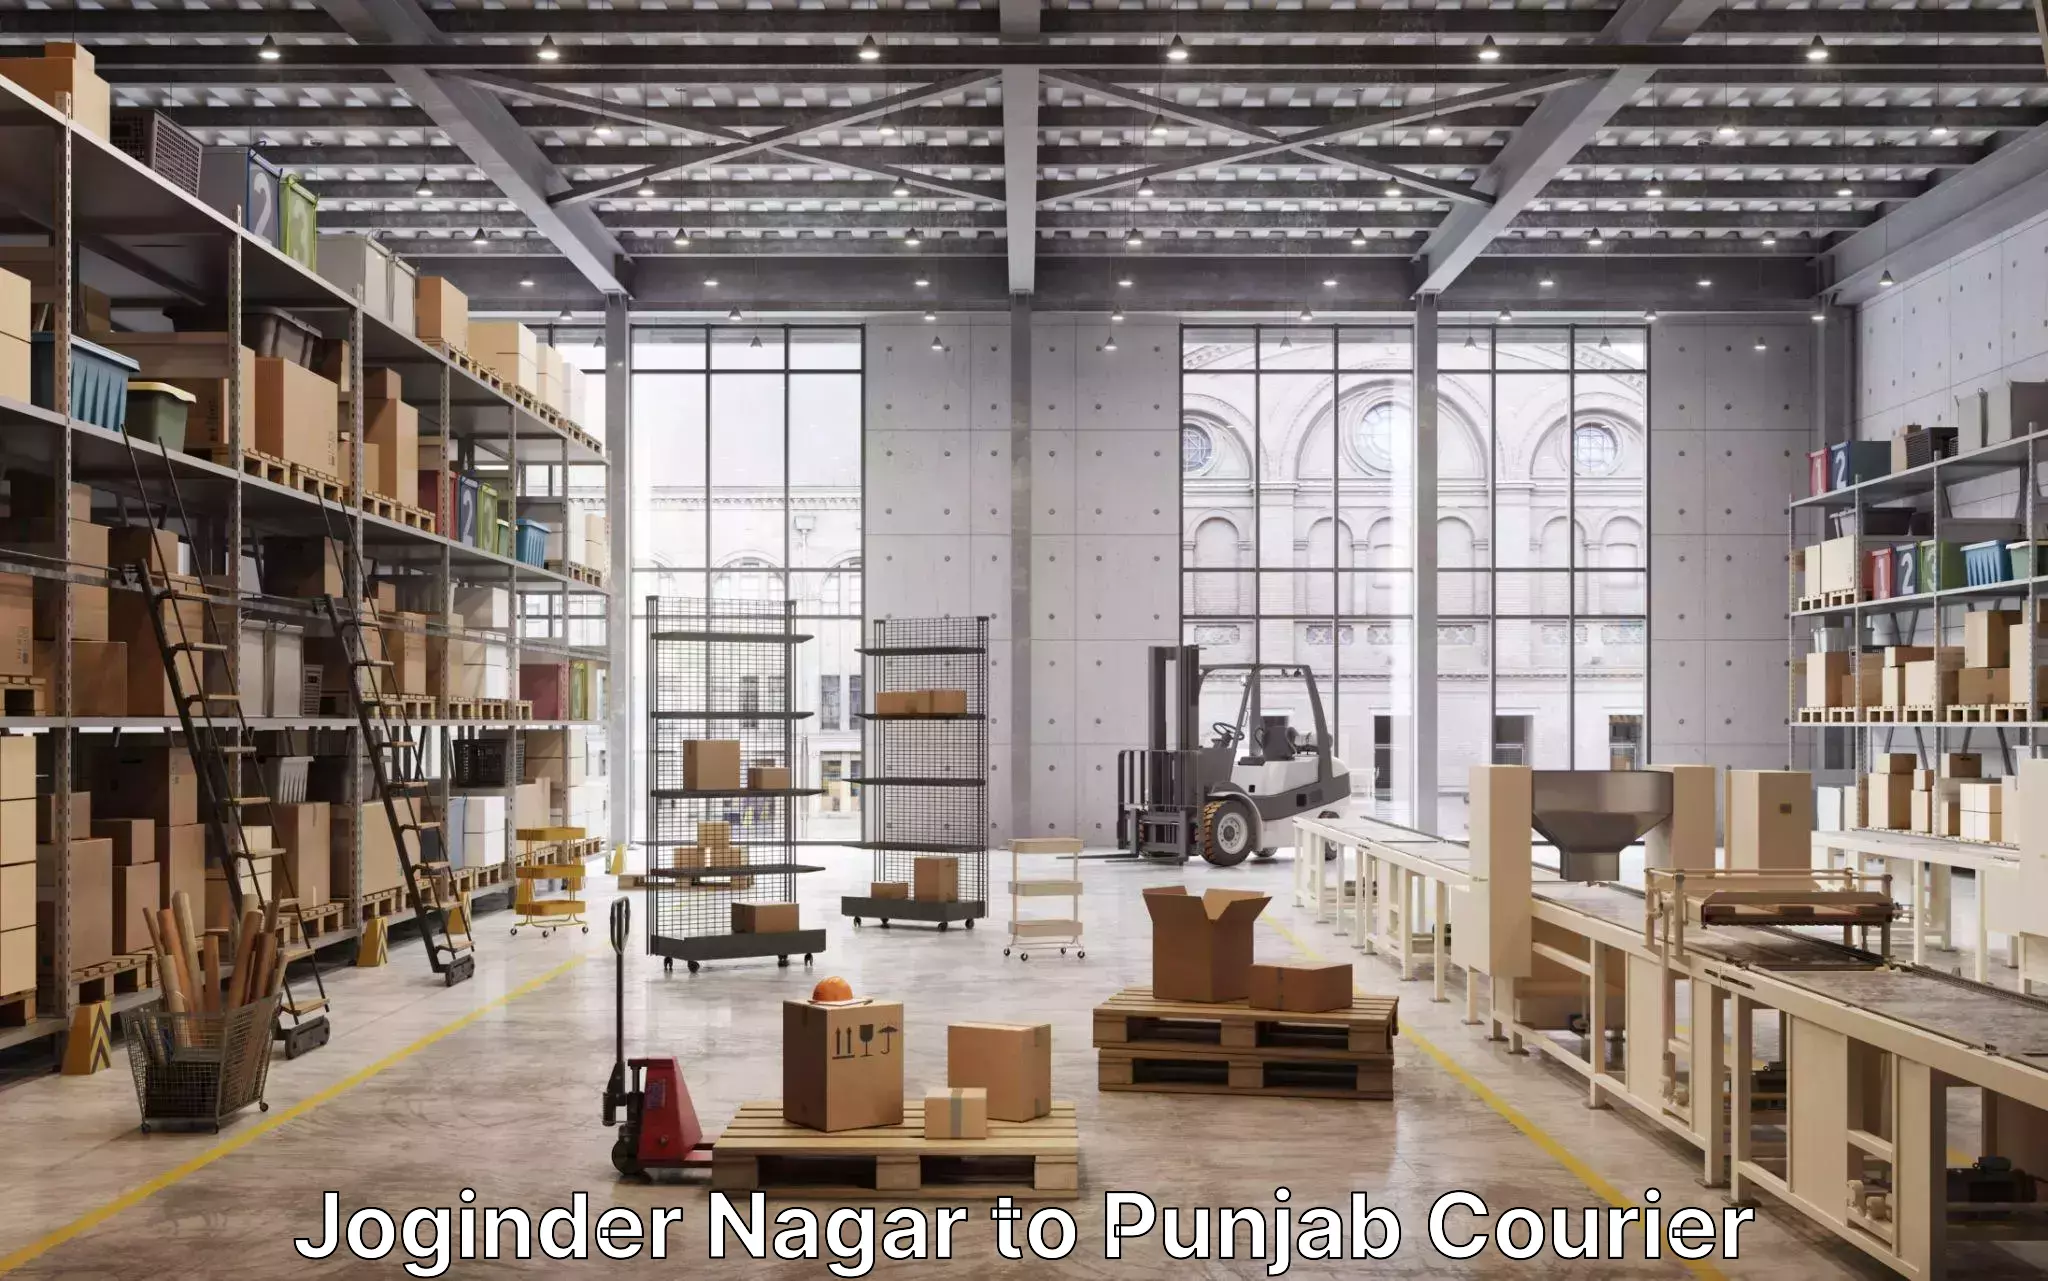 Furniture moving experts Joginder Nagar to Punjab